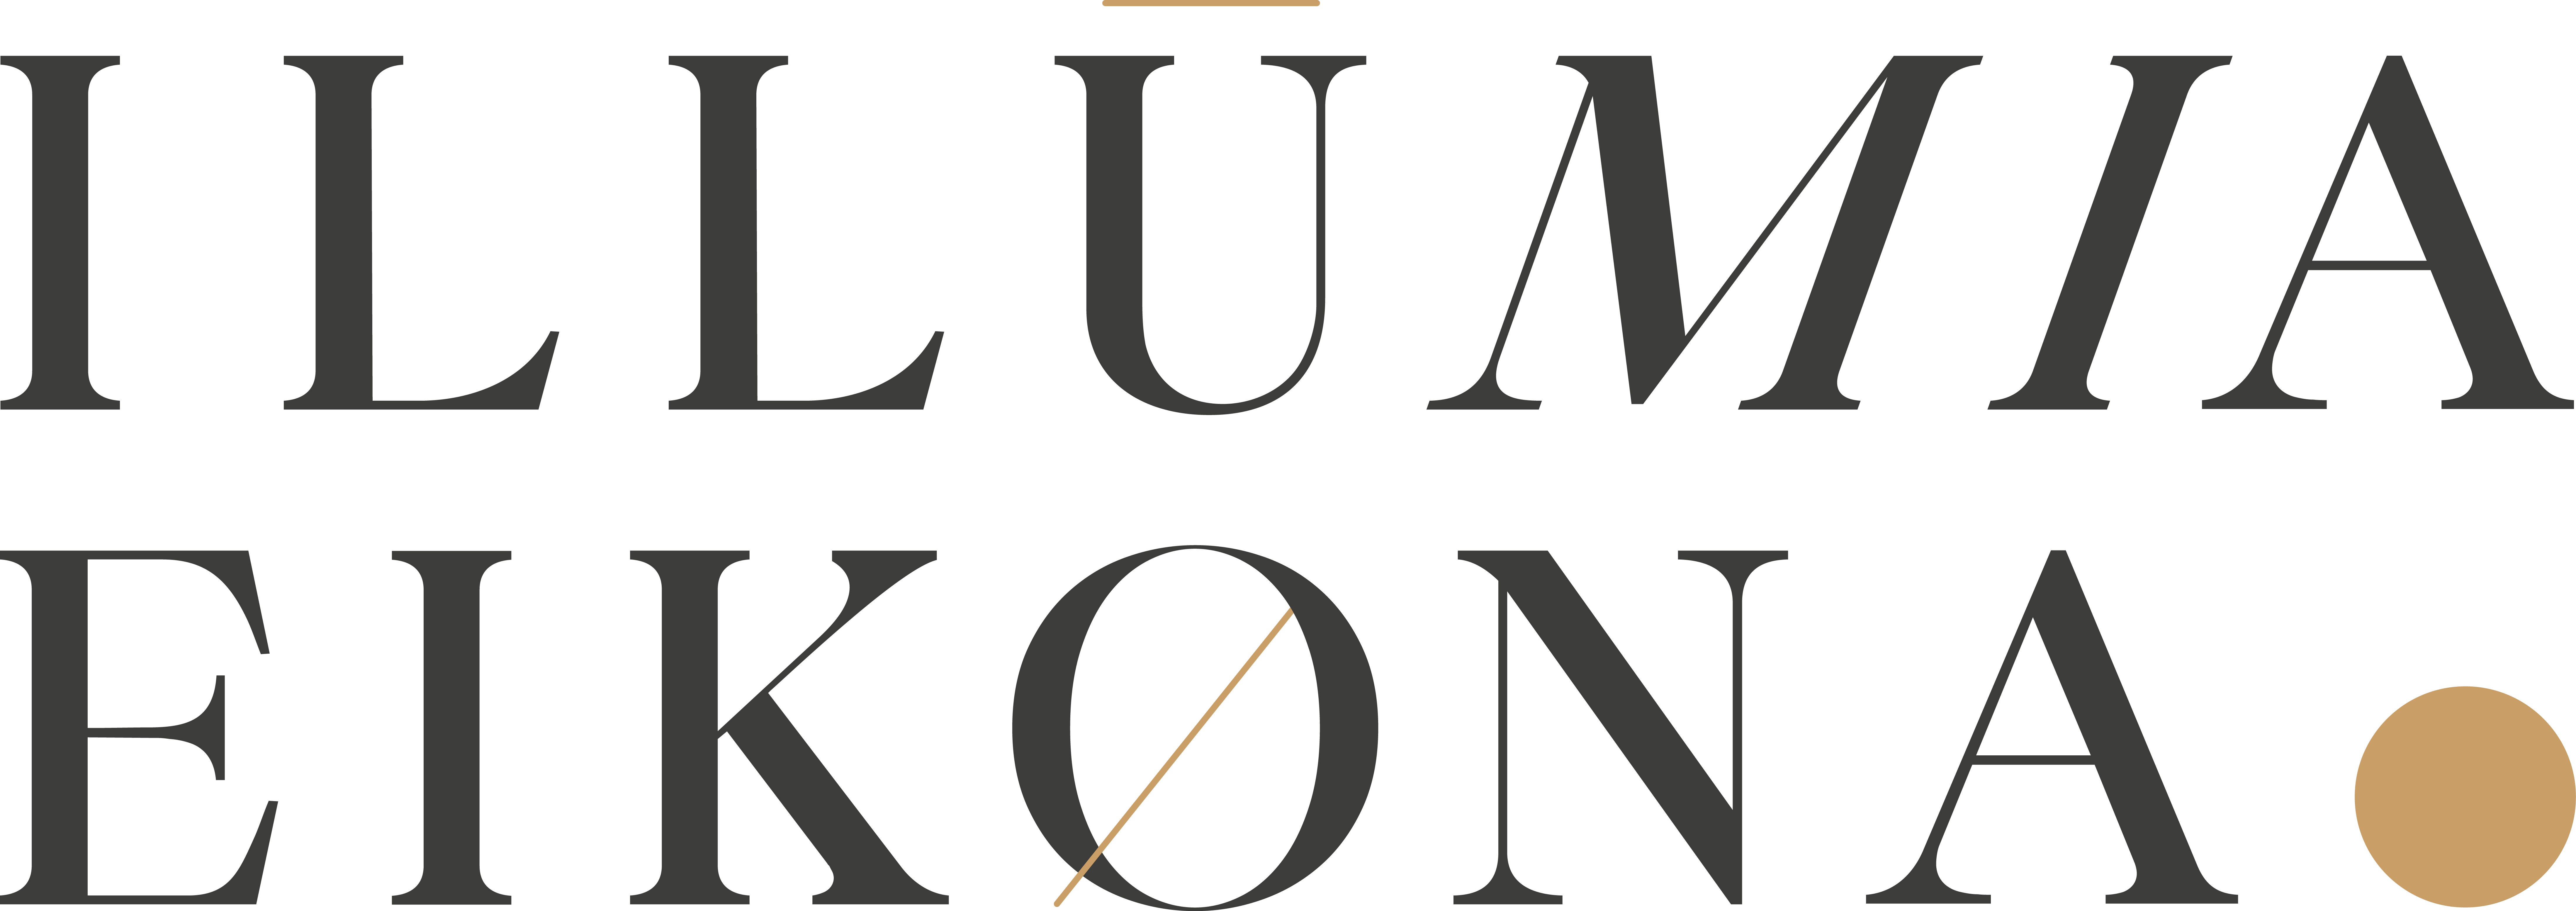 Illumia Eikona Logo der Hochzeitsfotografin aus Zürich - Illu von Illuminated - Erleuchtend. Mia von Ihrem Namen und Eikona von Bild aus dem Griechischen.